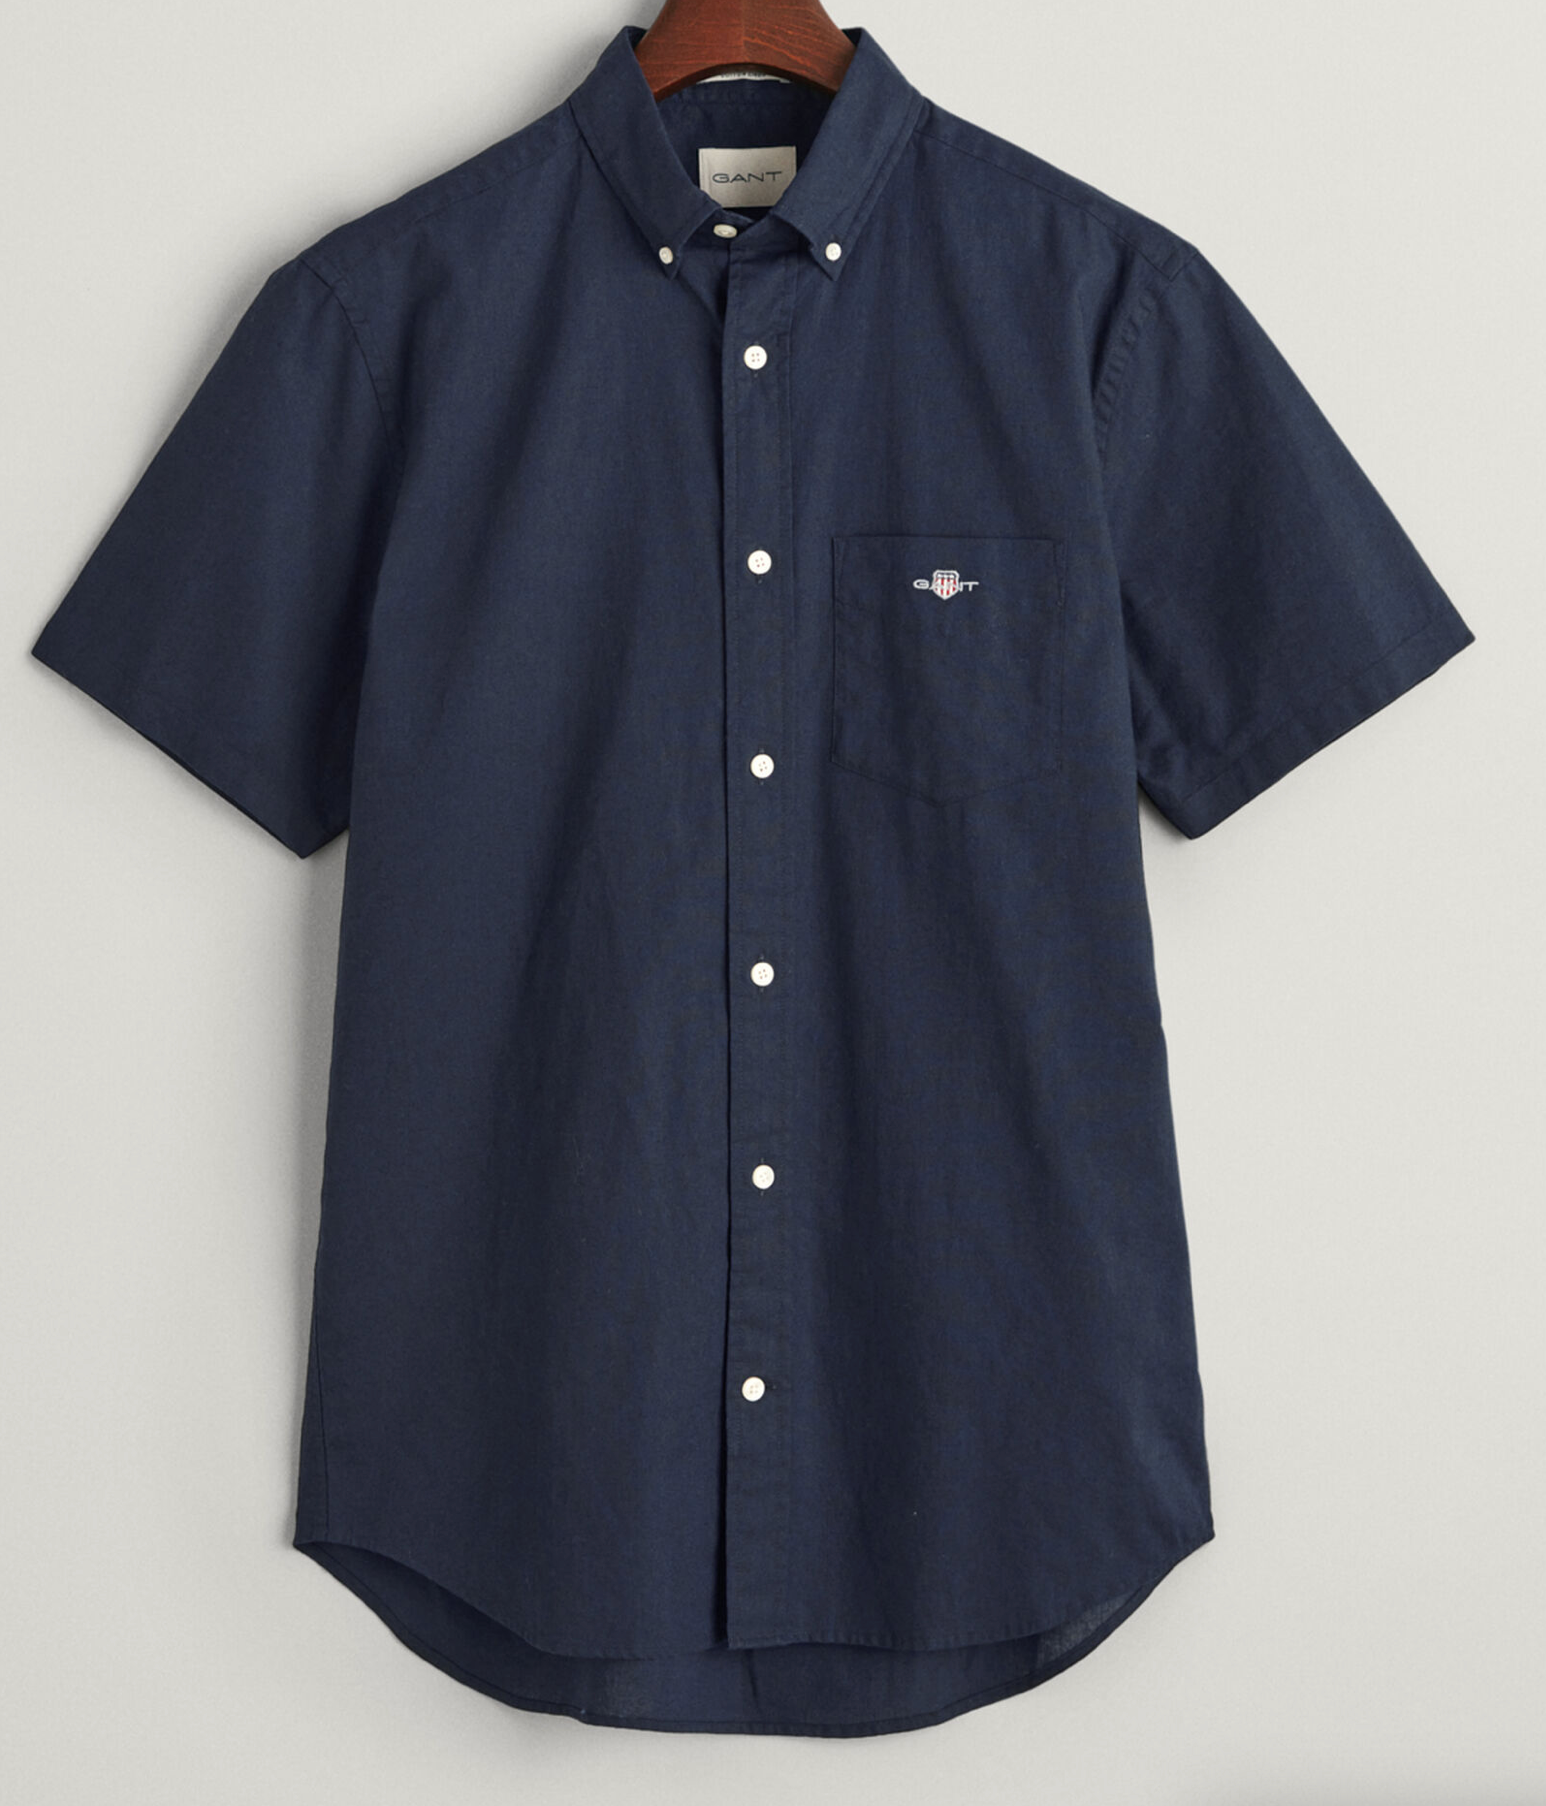 Gant Cotton Linen Short Sleeve Shirt Navy